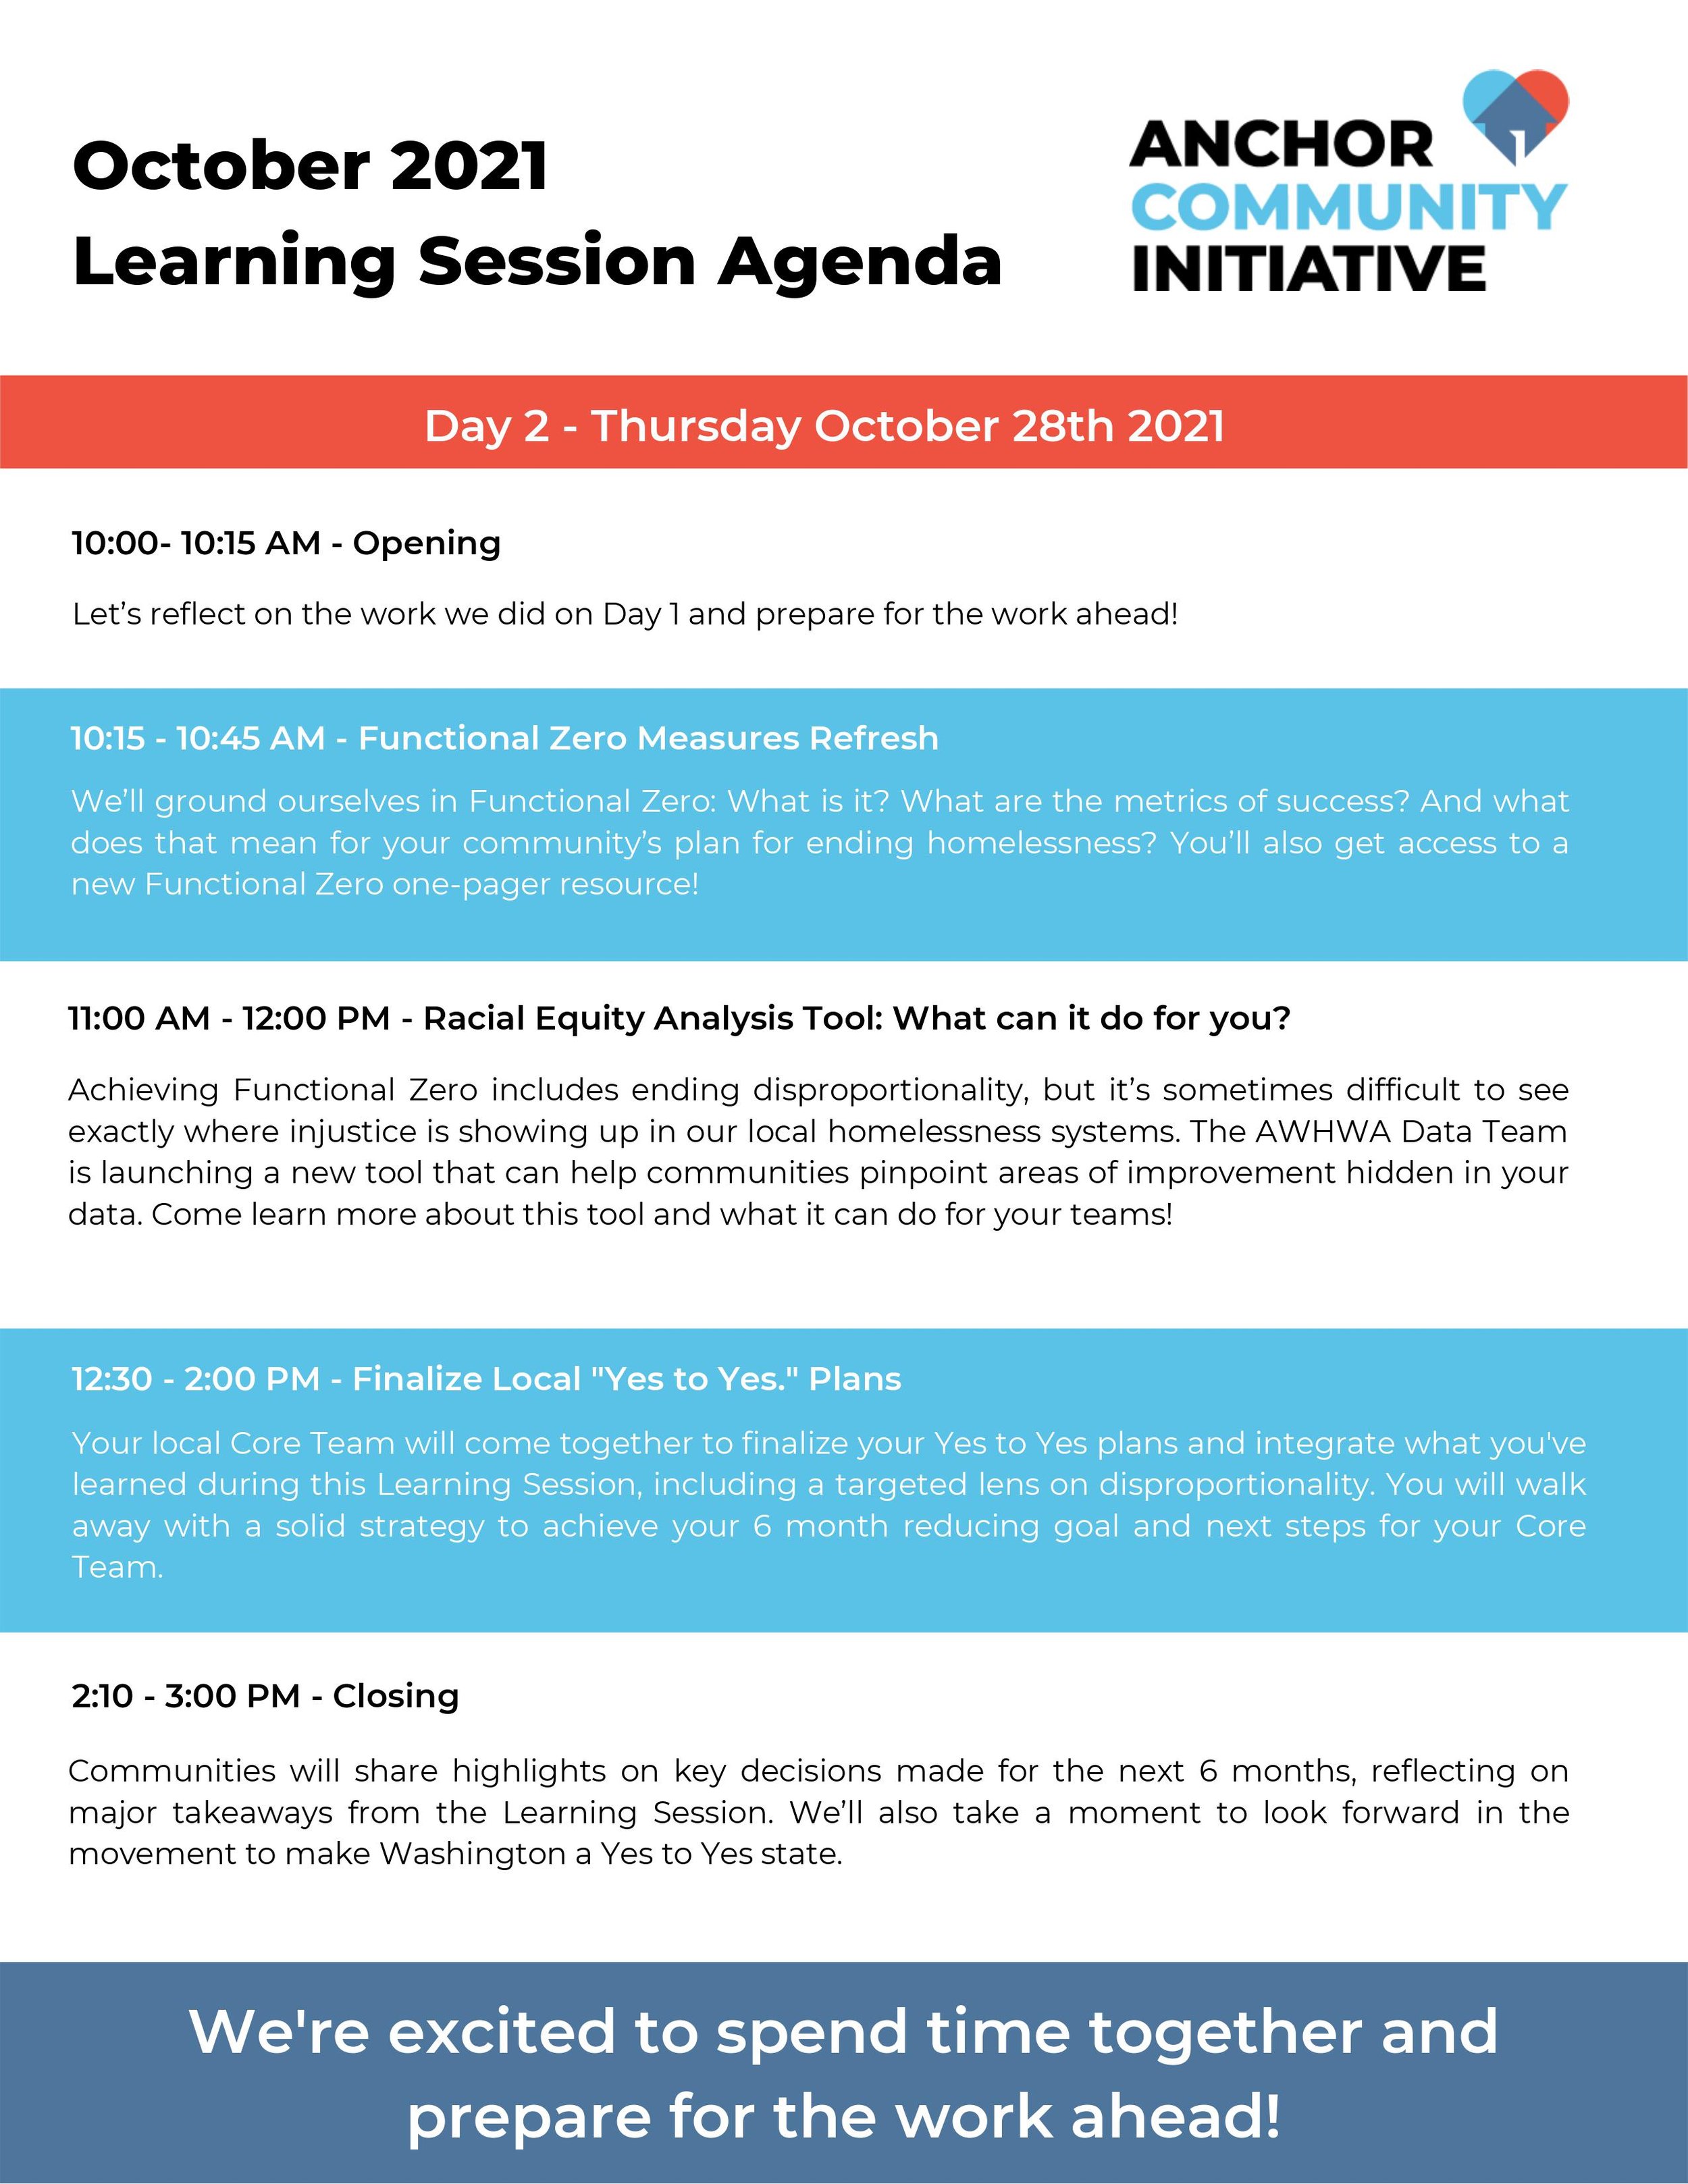 Learning Session Oct 2021 Agenda 2.jpg